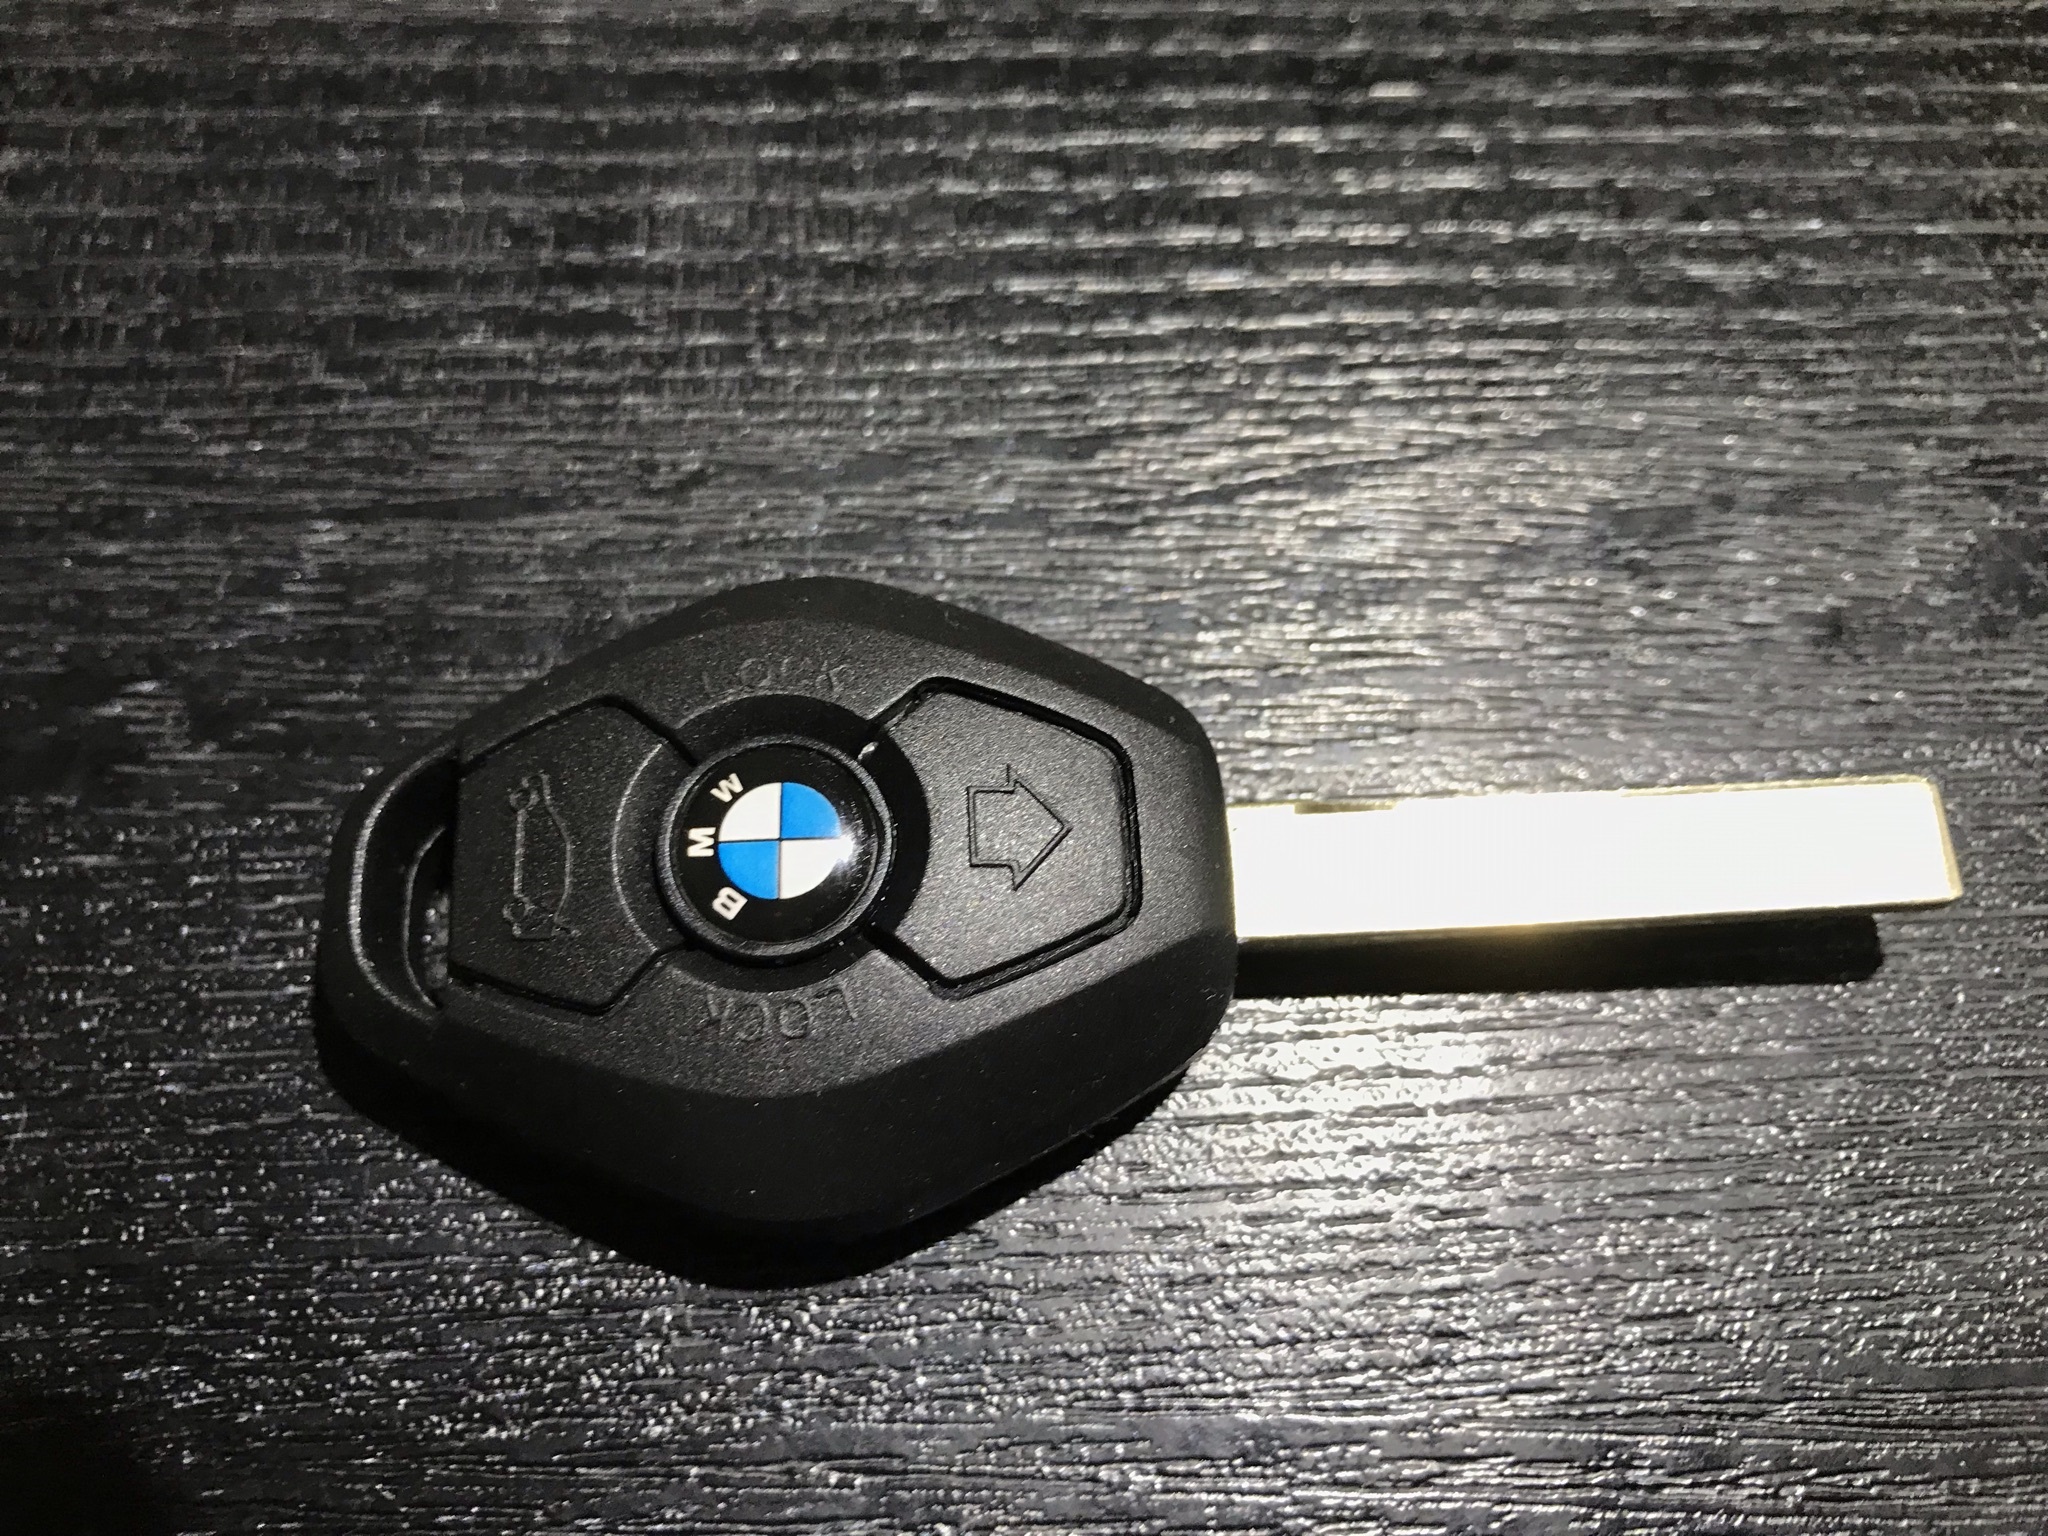 E46のブランクキーを買った | BMW E46 カブリオレな話